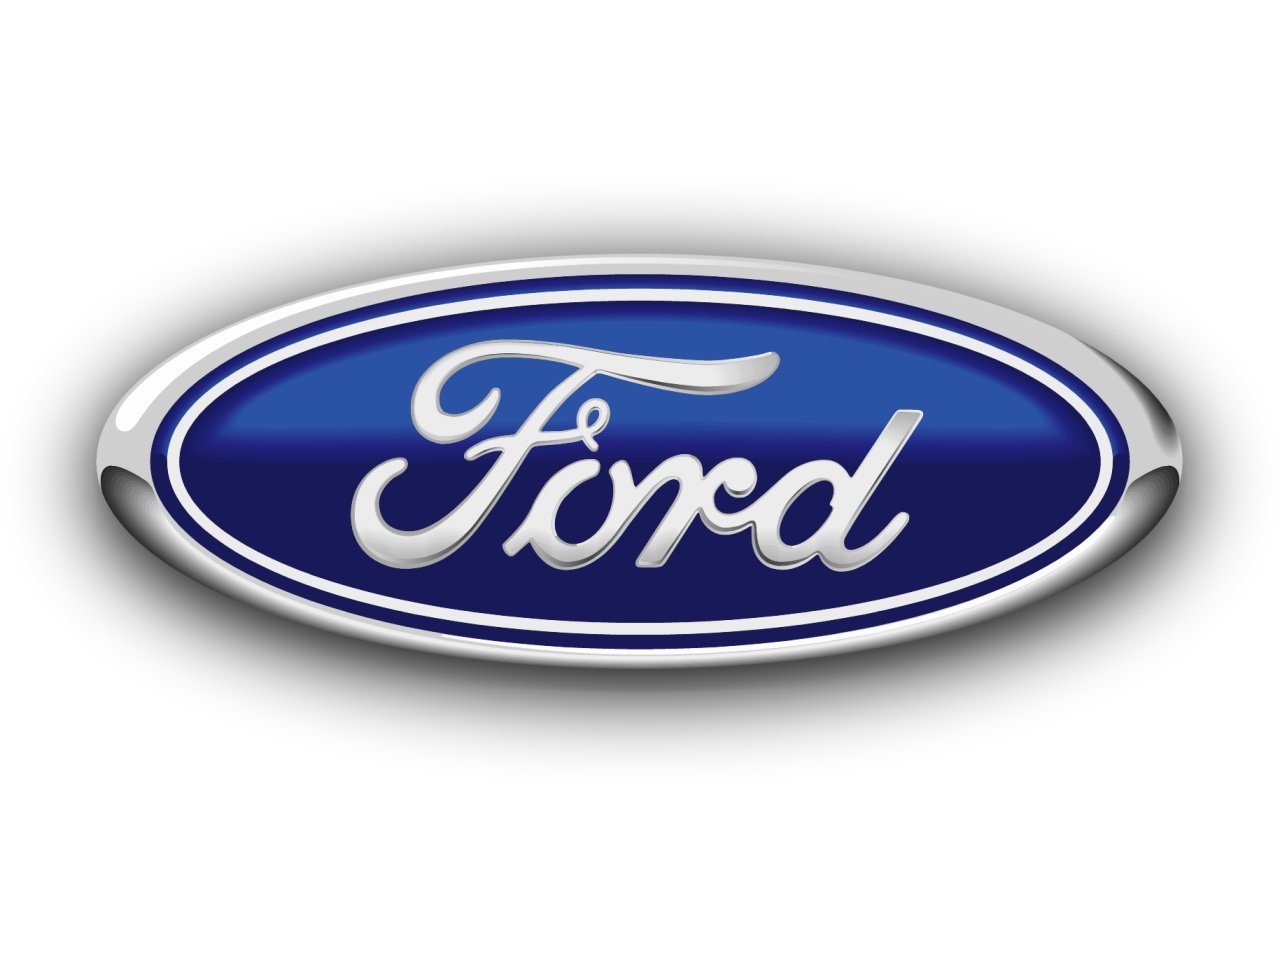 2001 Ford focus engine dies